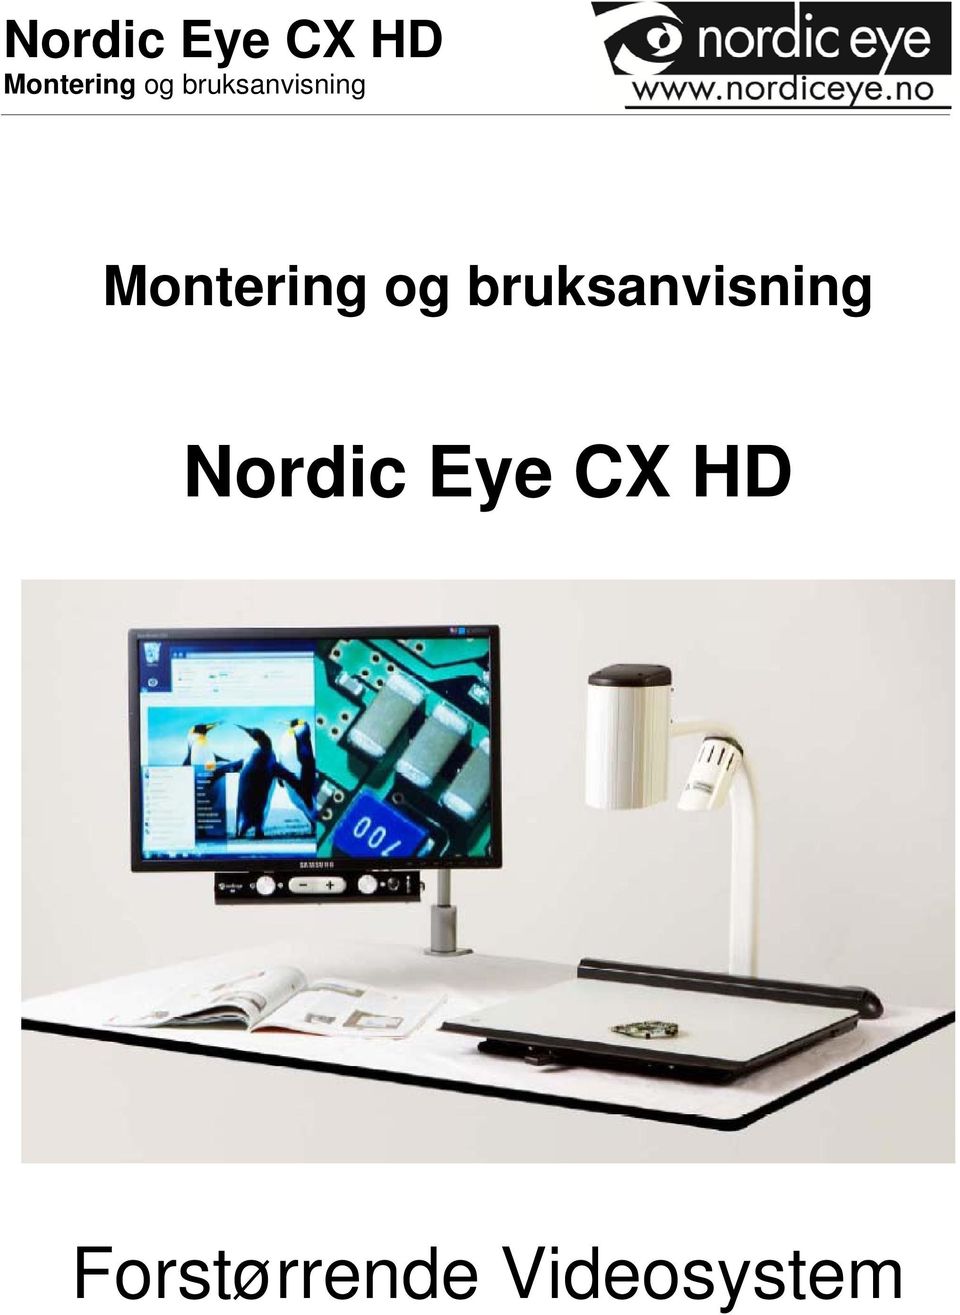 Nordic Eye CX HD